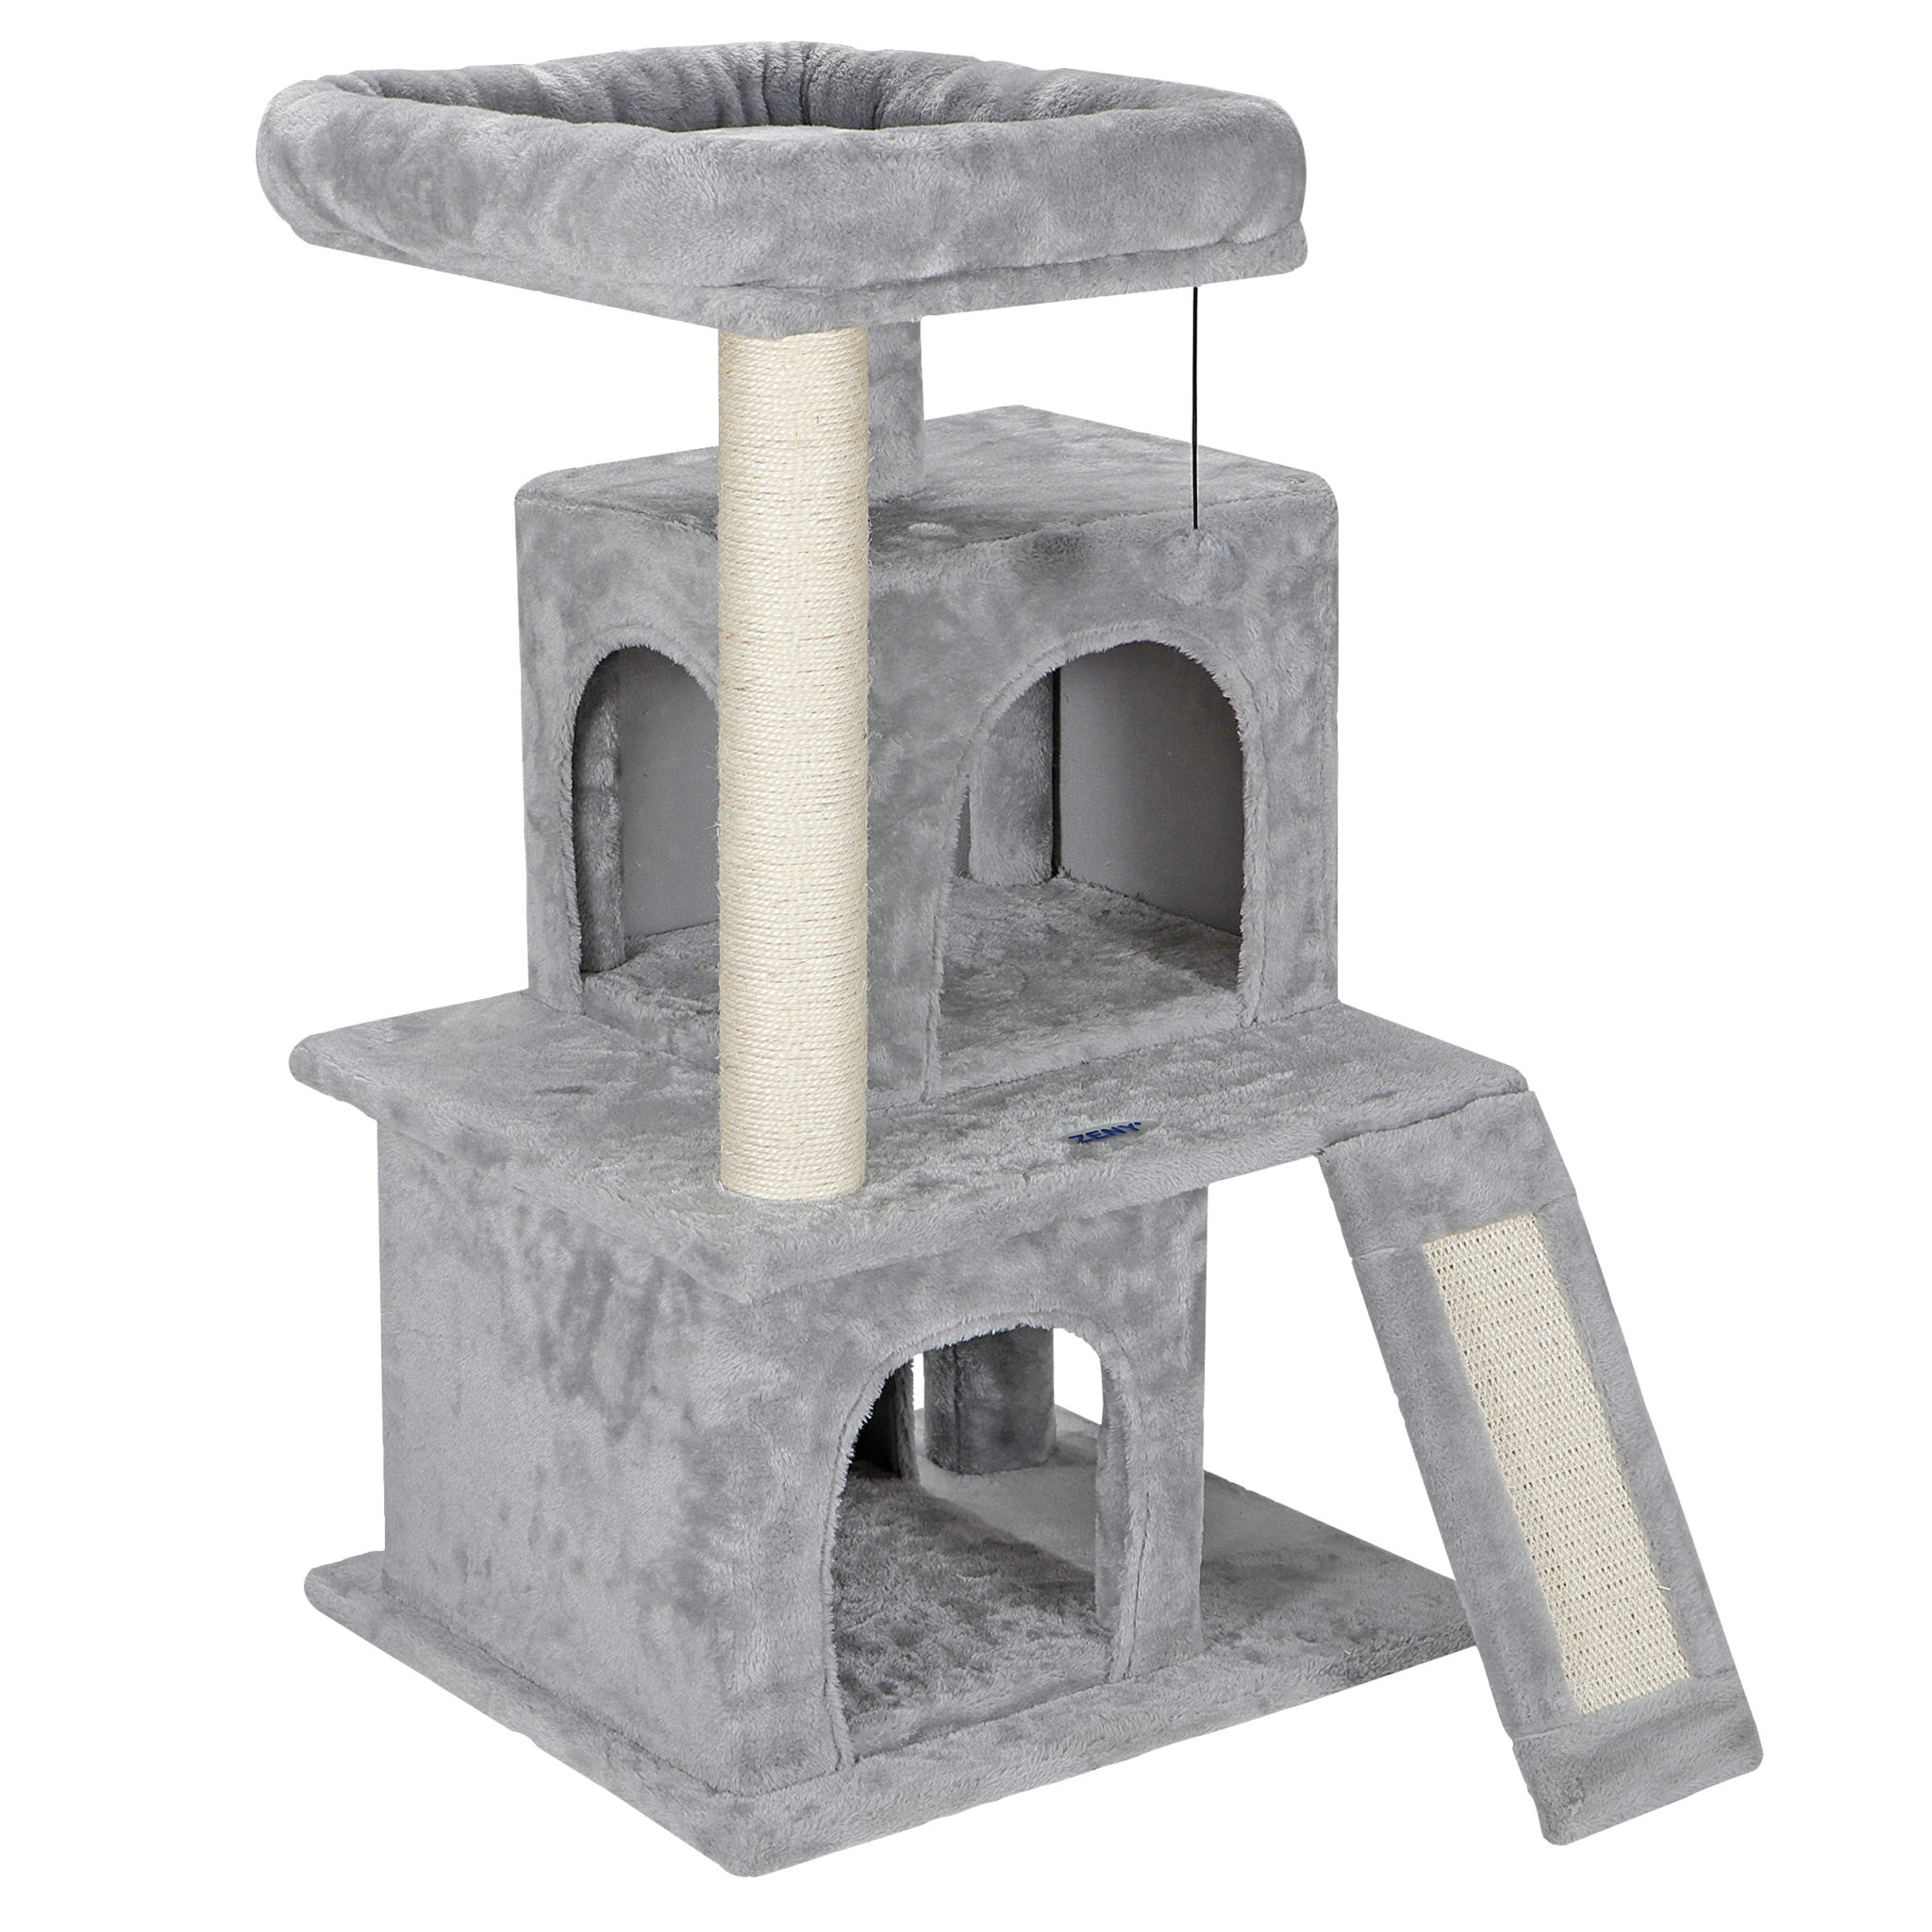 子猫ちゃんも安心の高さ キャットタワー 高さ約85cm 猫タワー おもちゃのポール 2つ猫部屋付き ふわふわ素材 天然サイザル麻紐 爪とぎ